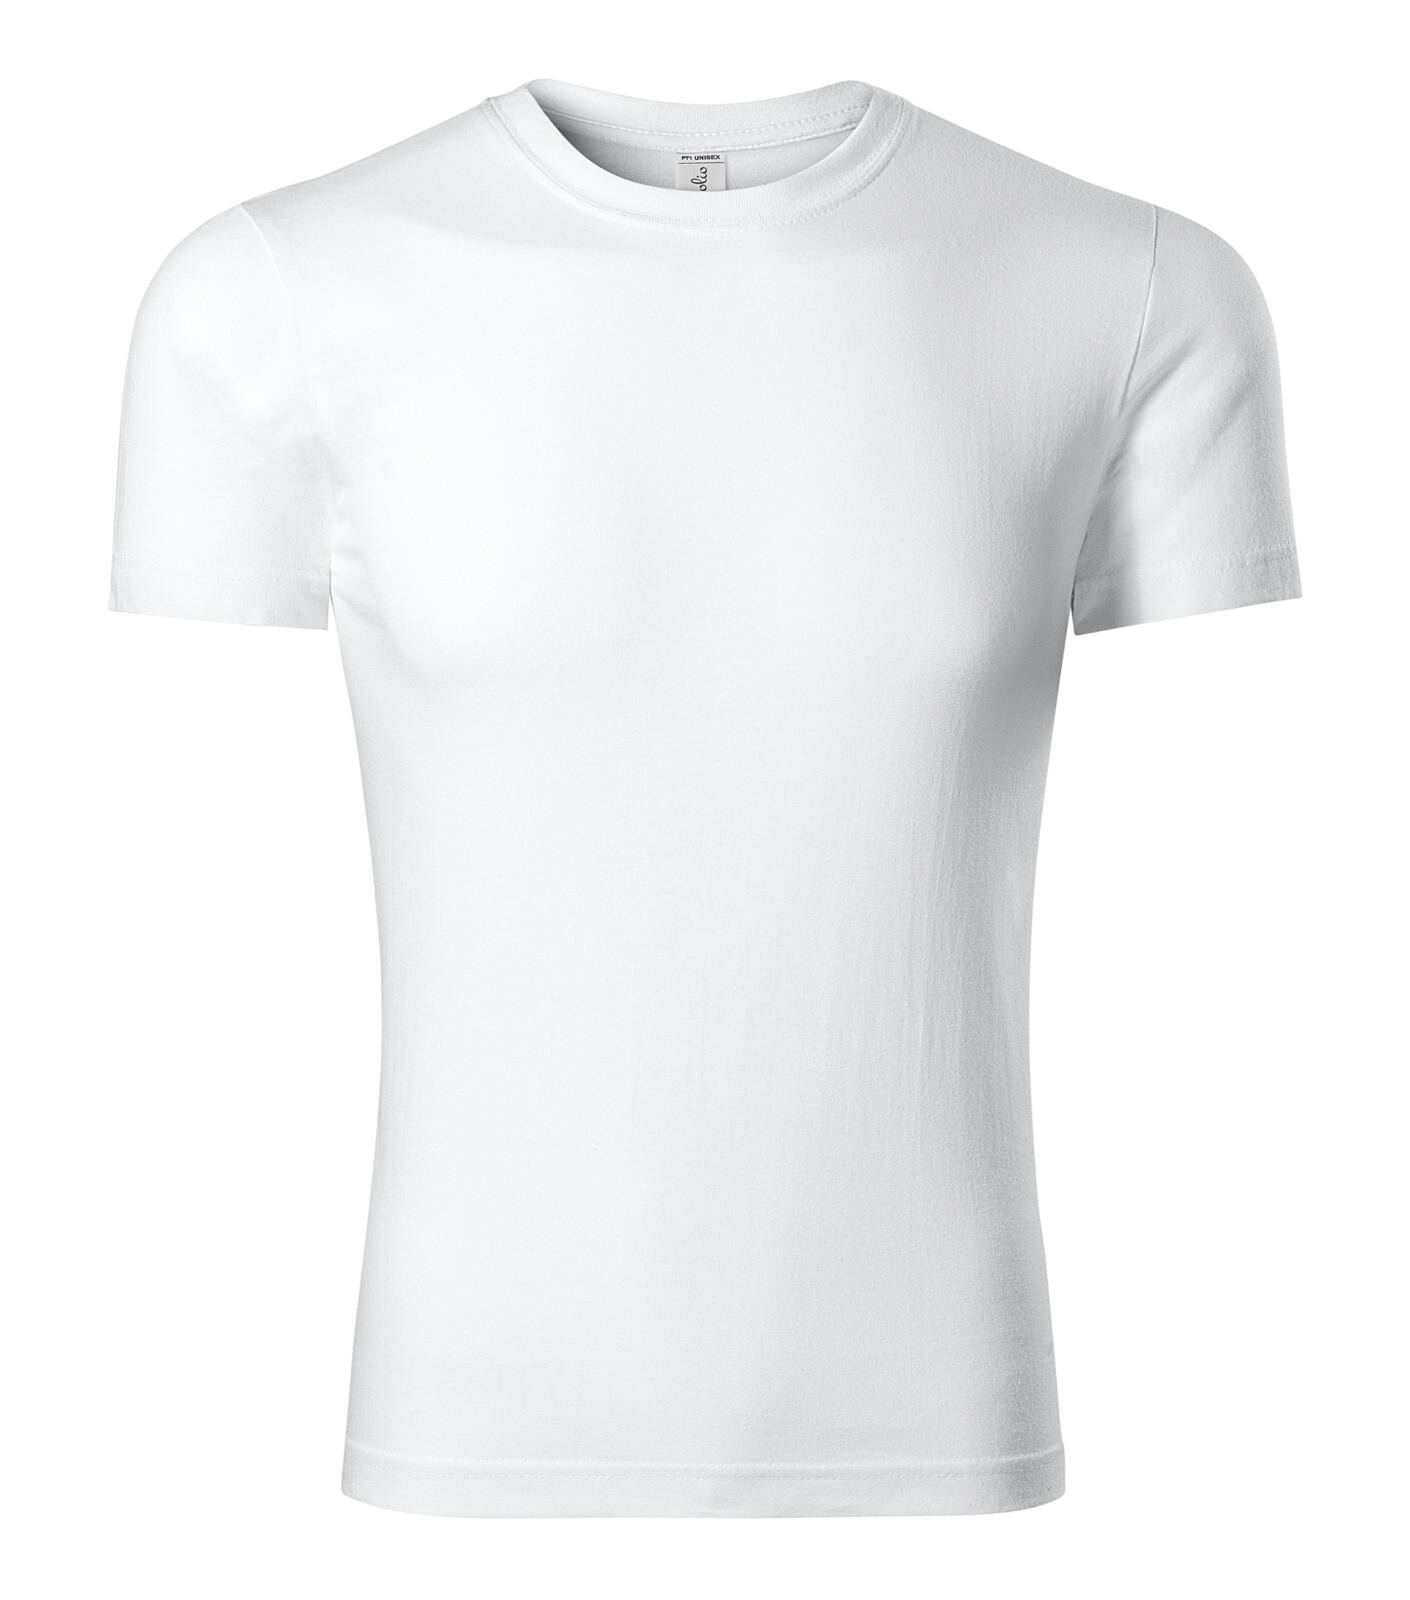 Unisex bavlnené tričko Piccolio Parade P71 - veľkosť: 4XL, farba: biela